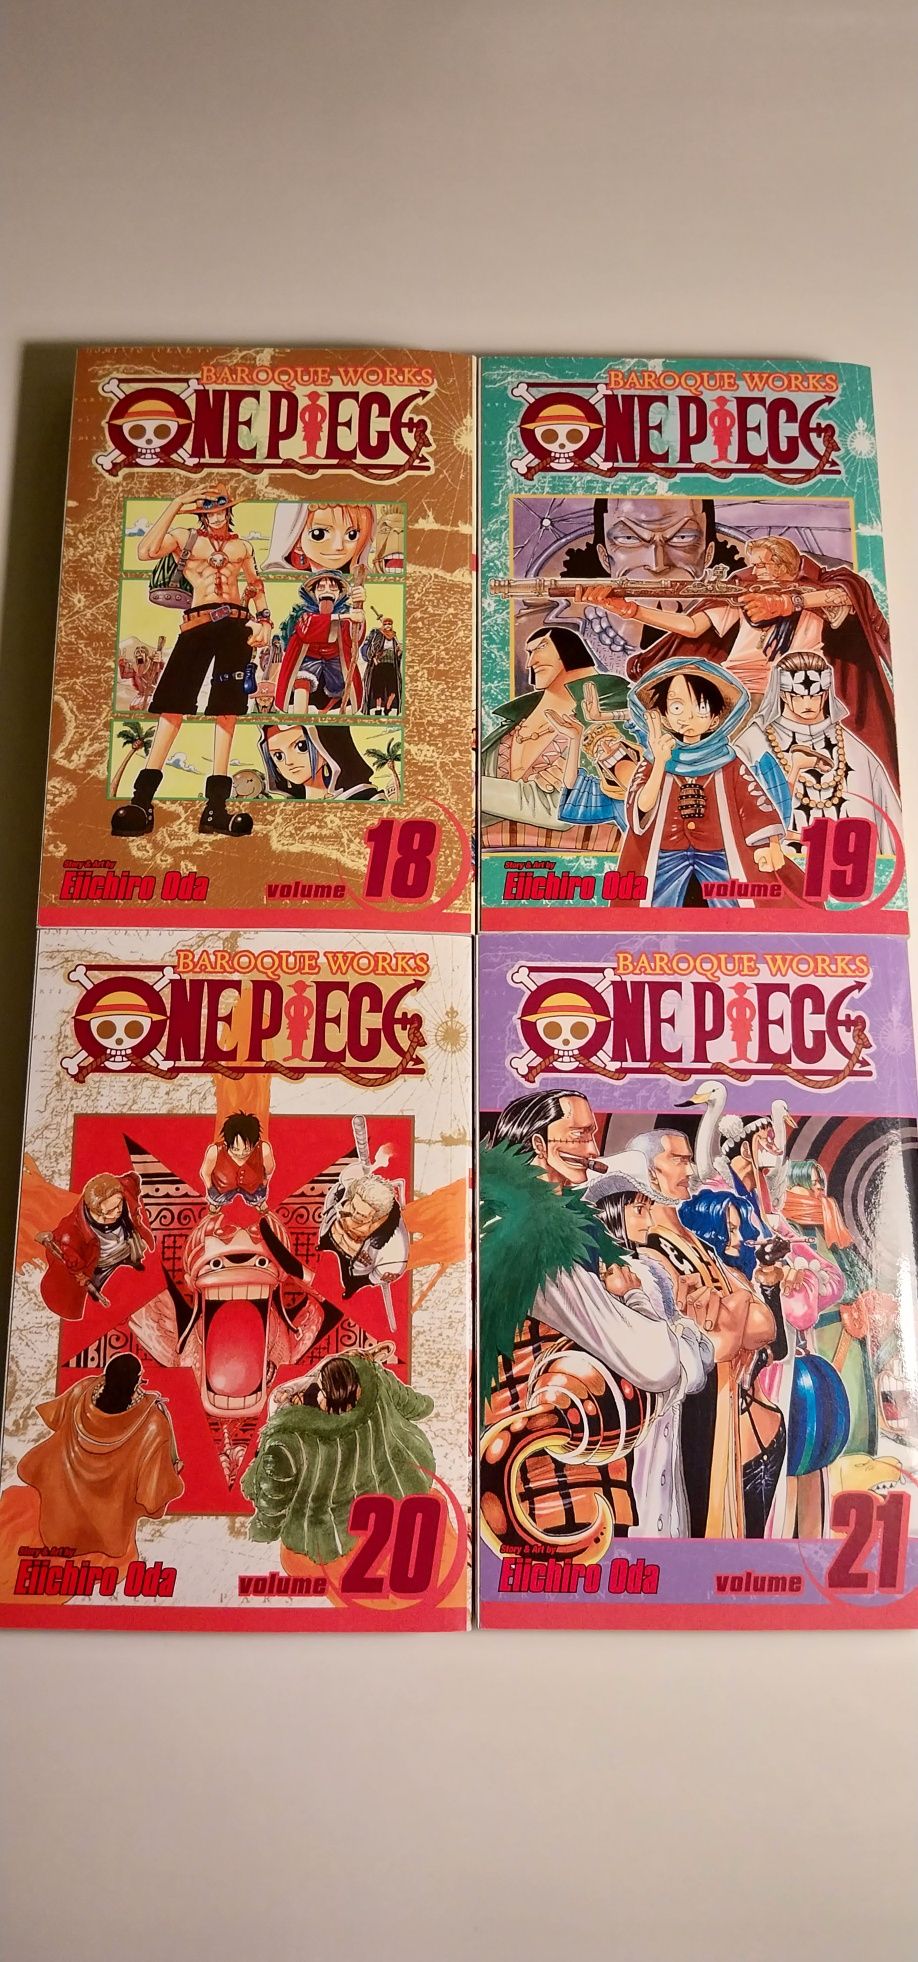 Manga în engleza diferite serii